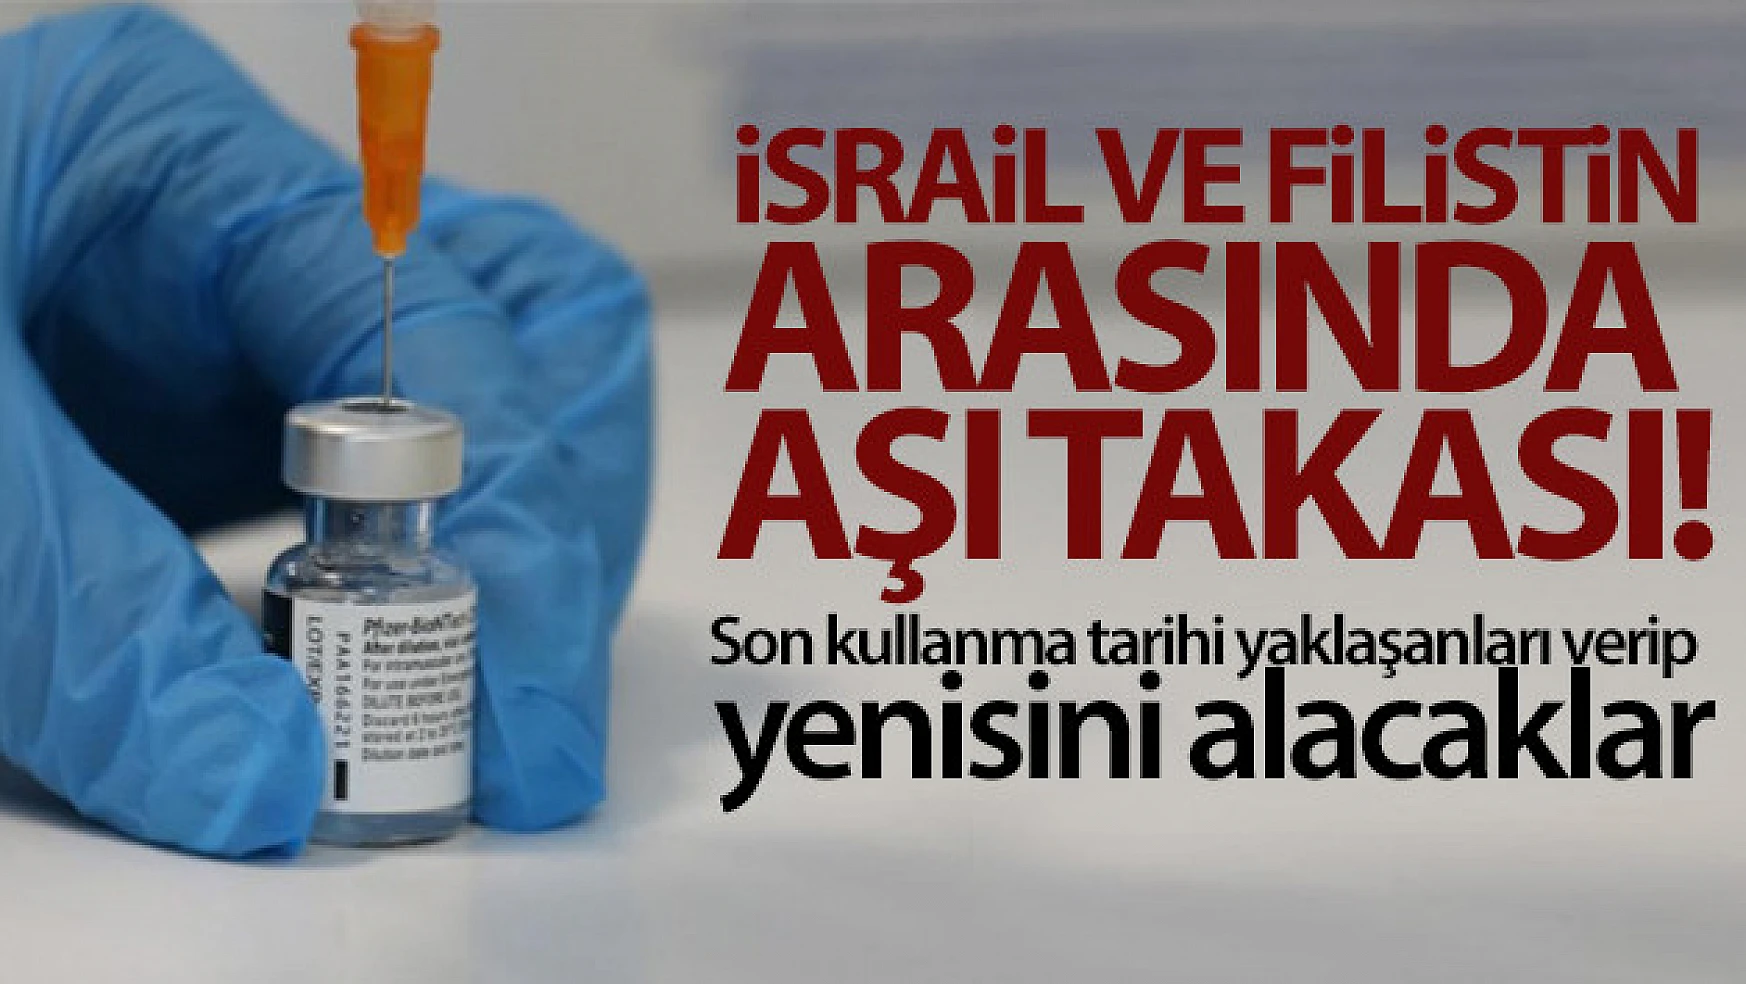 İsrail ile Filistin arasında 1 milyon doz aşı takası yapılacak